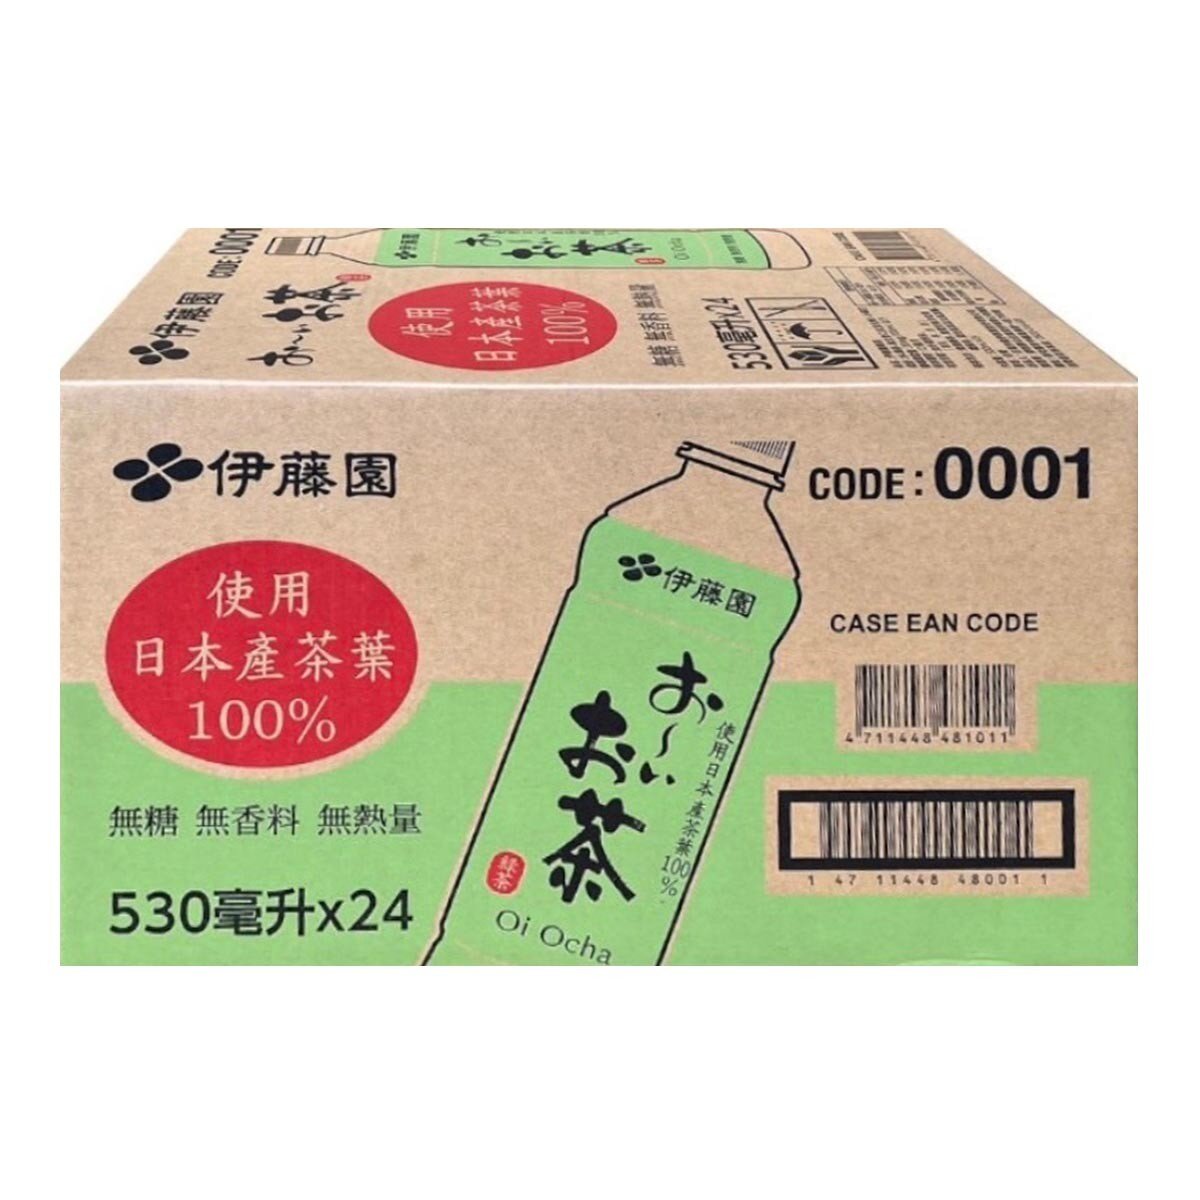 Ito-En 伊藤園 綠茶 530毫升 X 24瓶 X 50箱